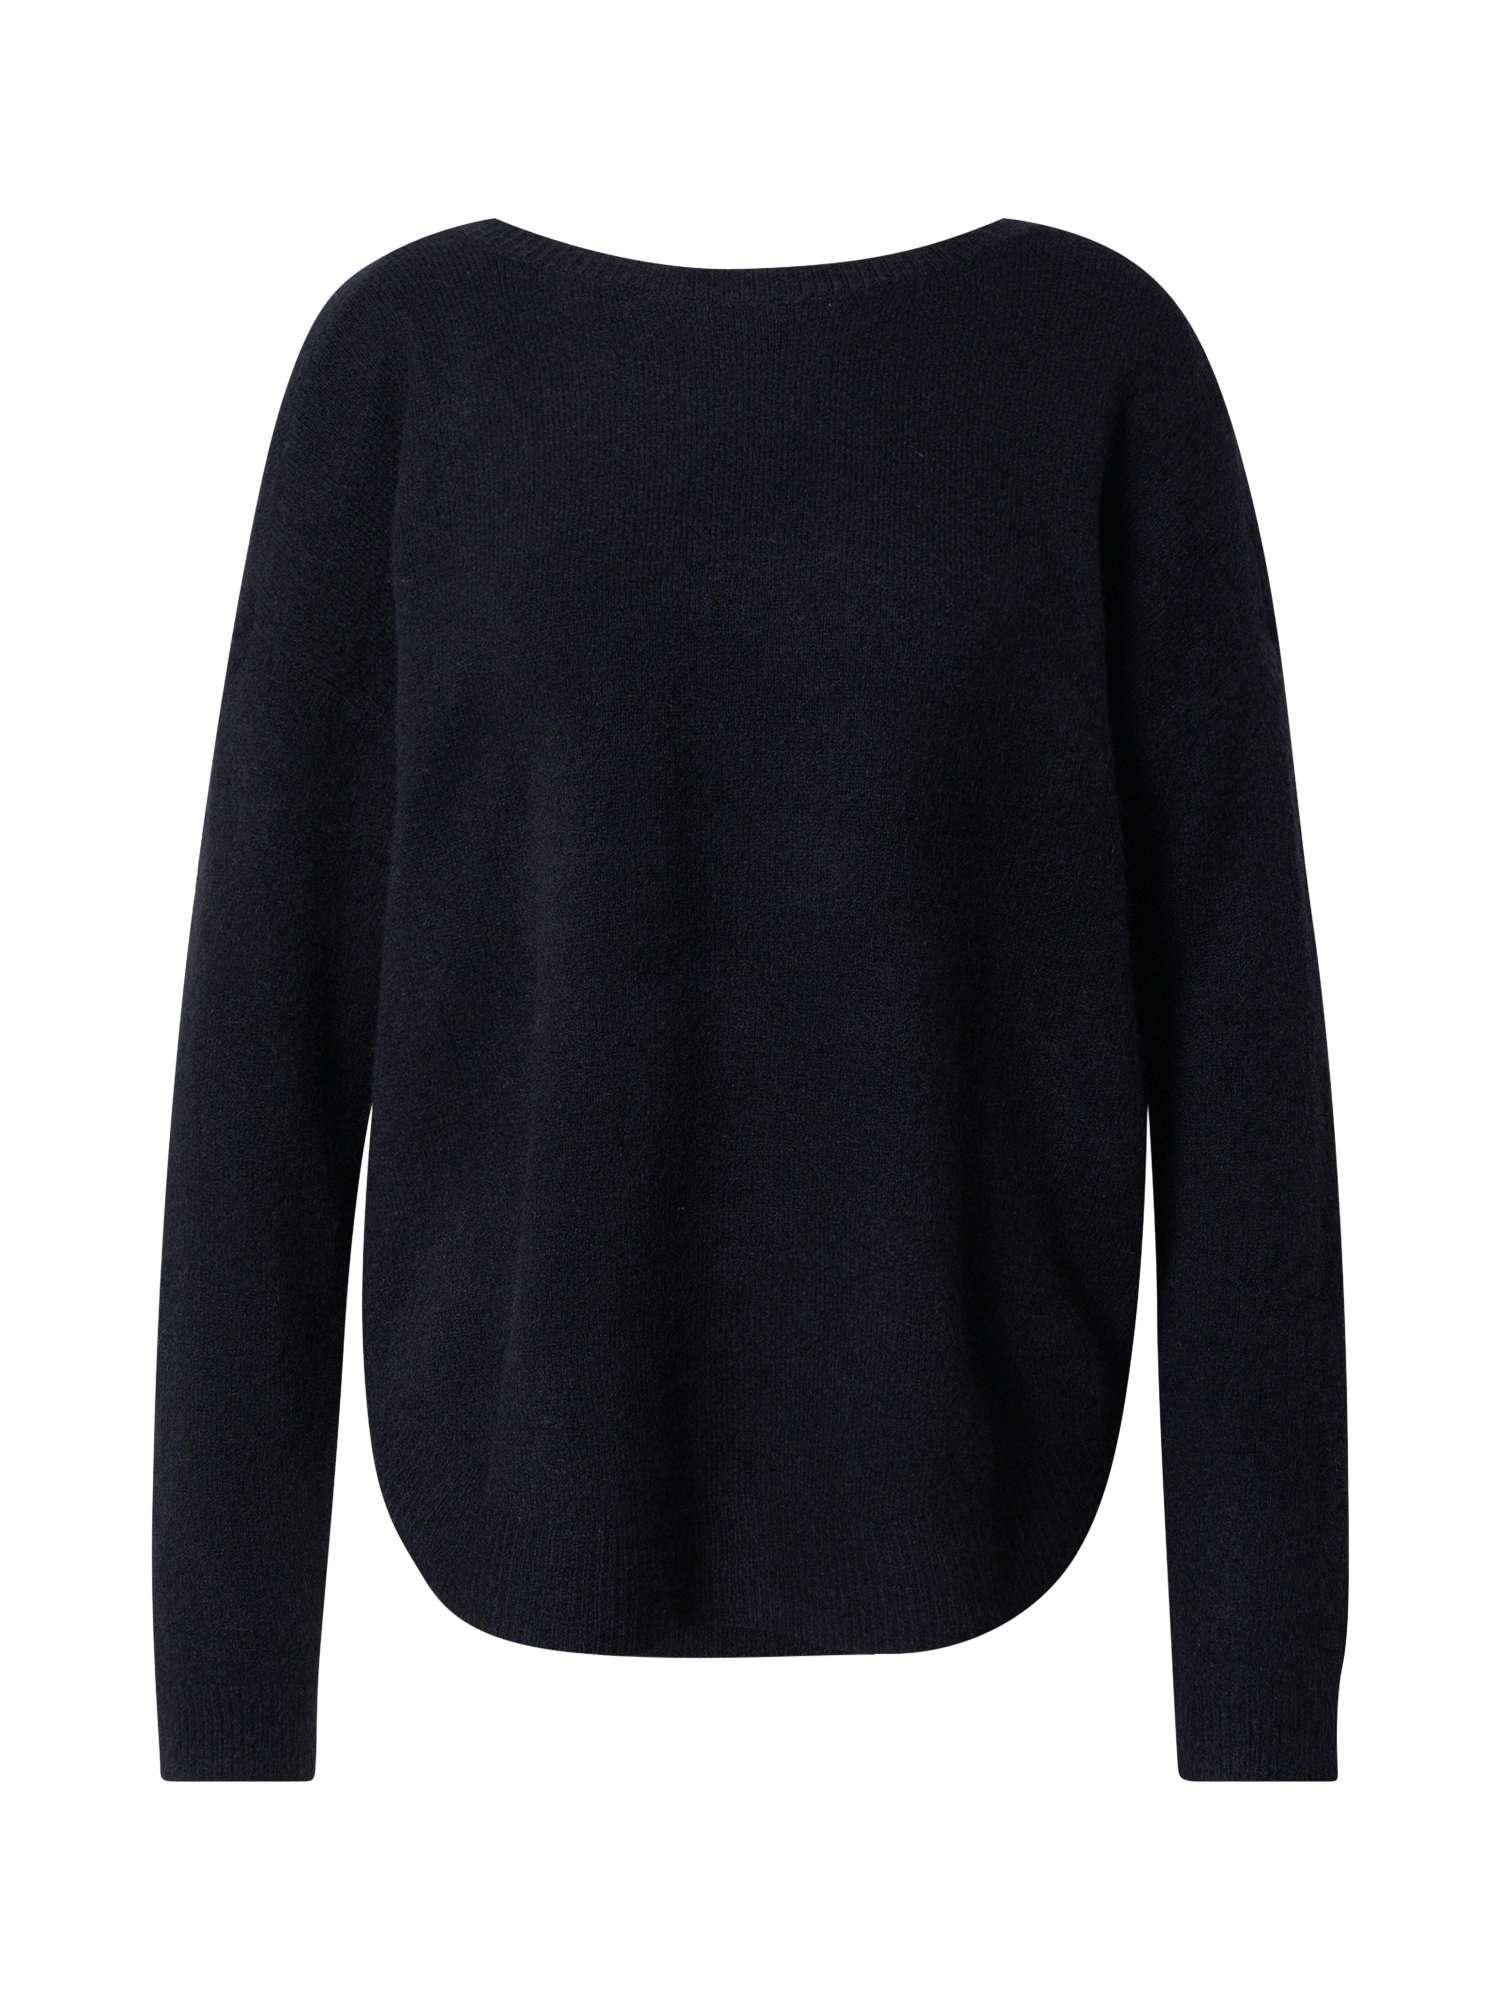 Kobiety Odzież VERO MODA Sweter KATIE w kolorze Czarnym 